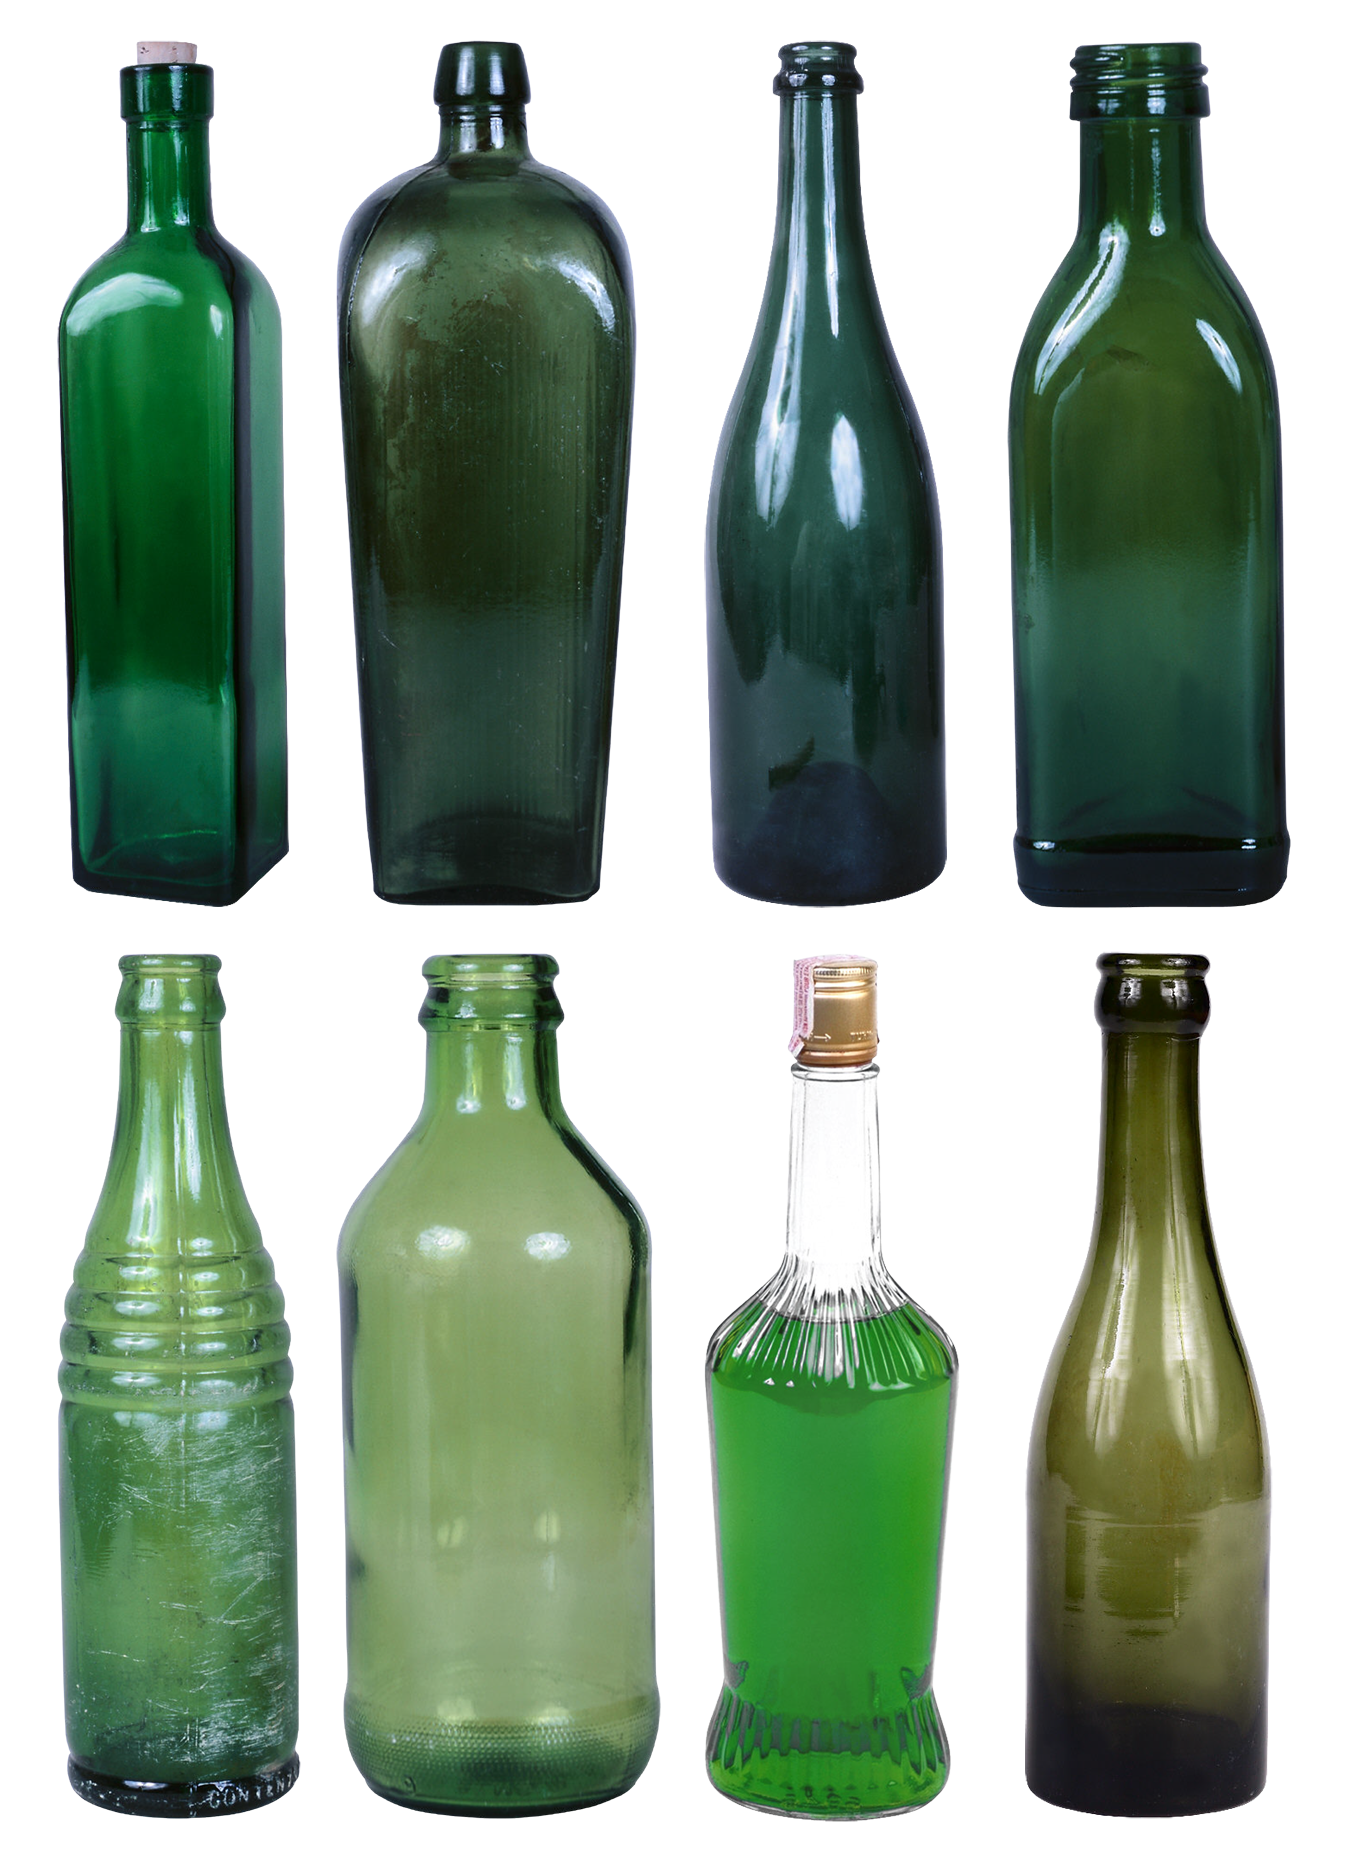 Bottiglia di vetro